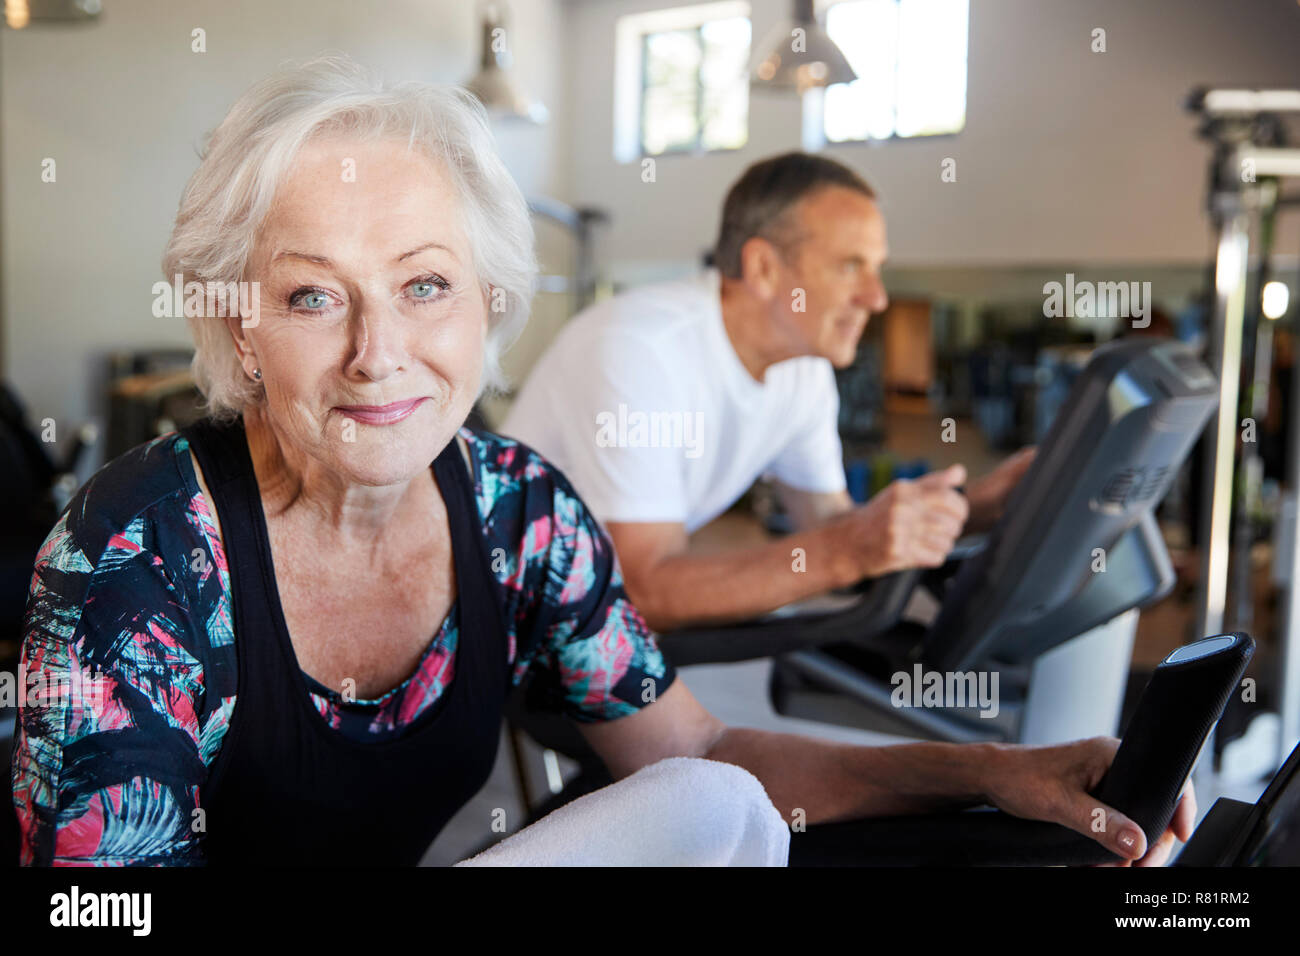 Portrait von Active Senior Frau Ausruhen nach Ausübung auf Radfahren Maschinen in der Turnhalle Stockfoto